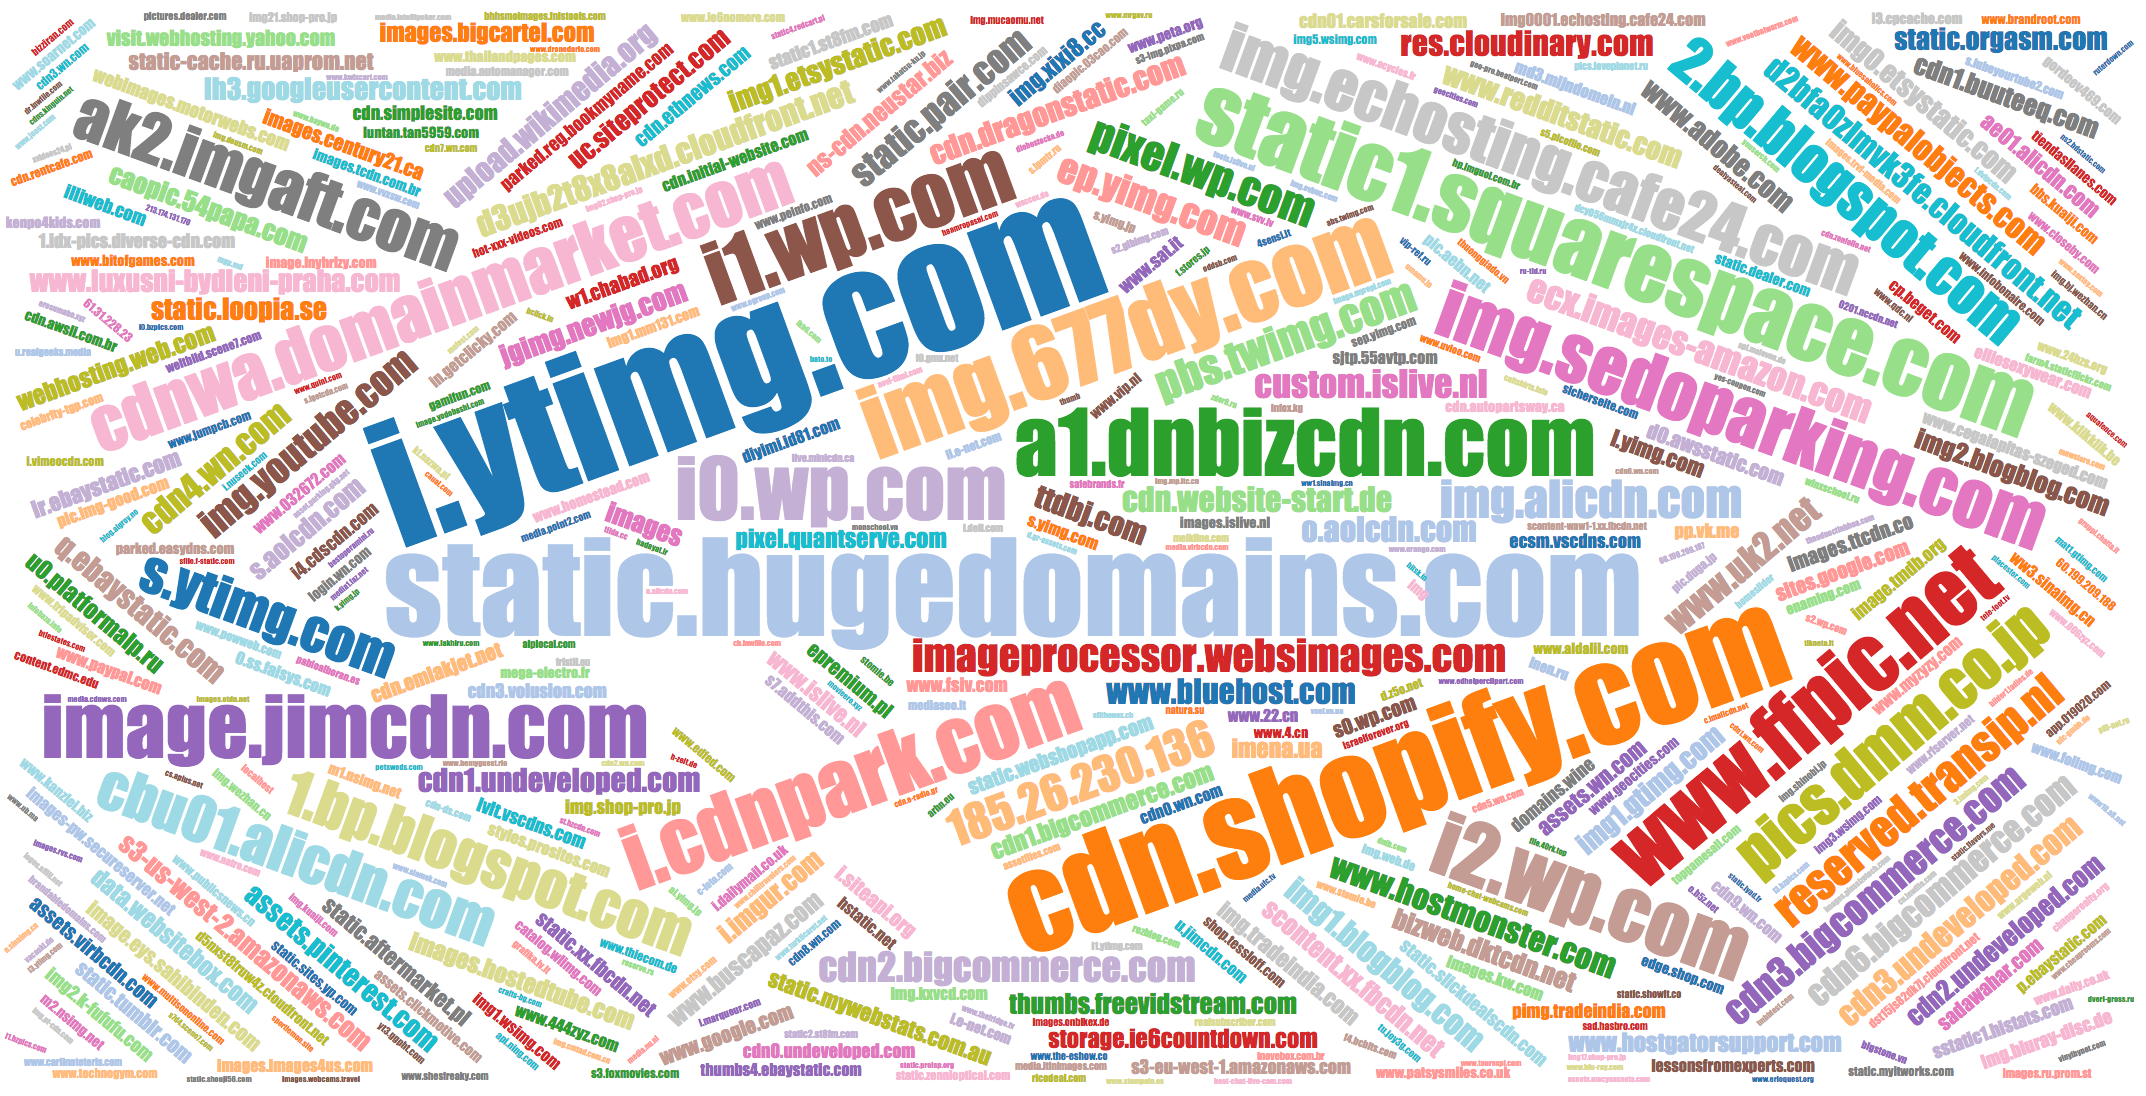 Popular names of IMG domains i.ytimg.com, i0.wp.com, etc.